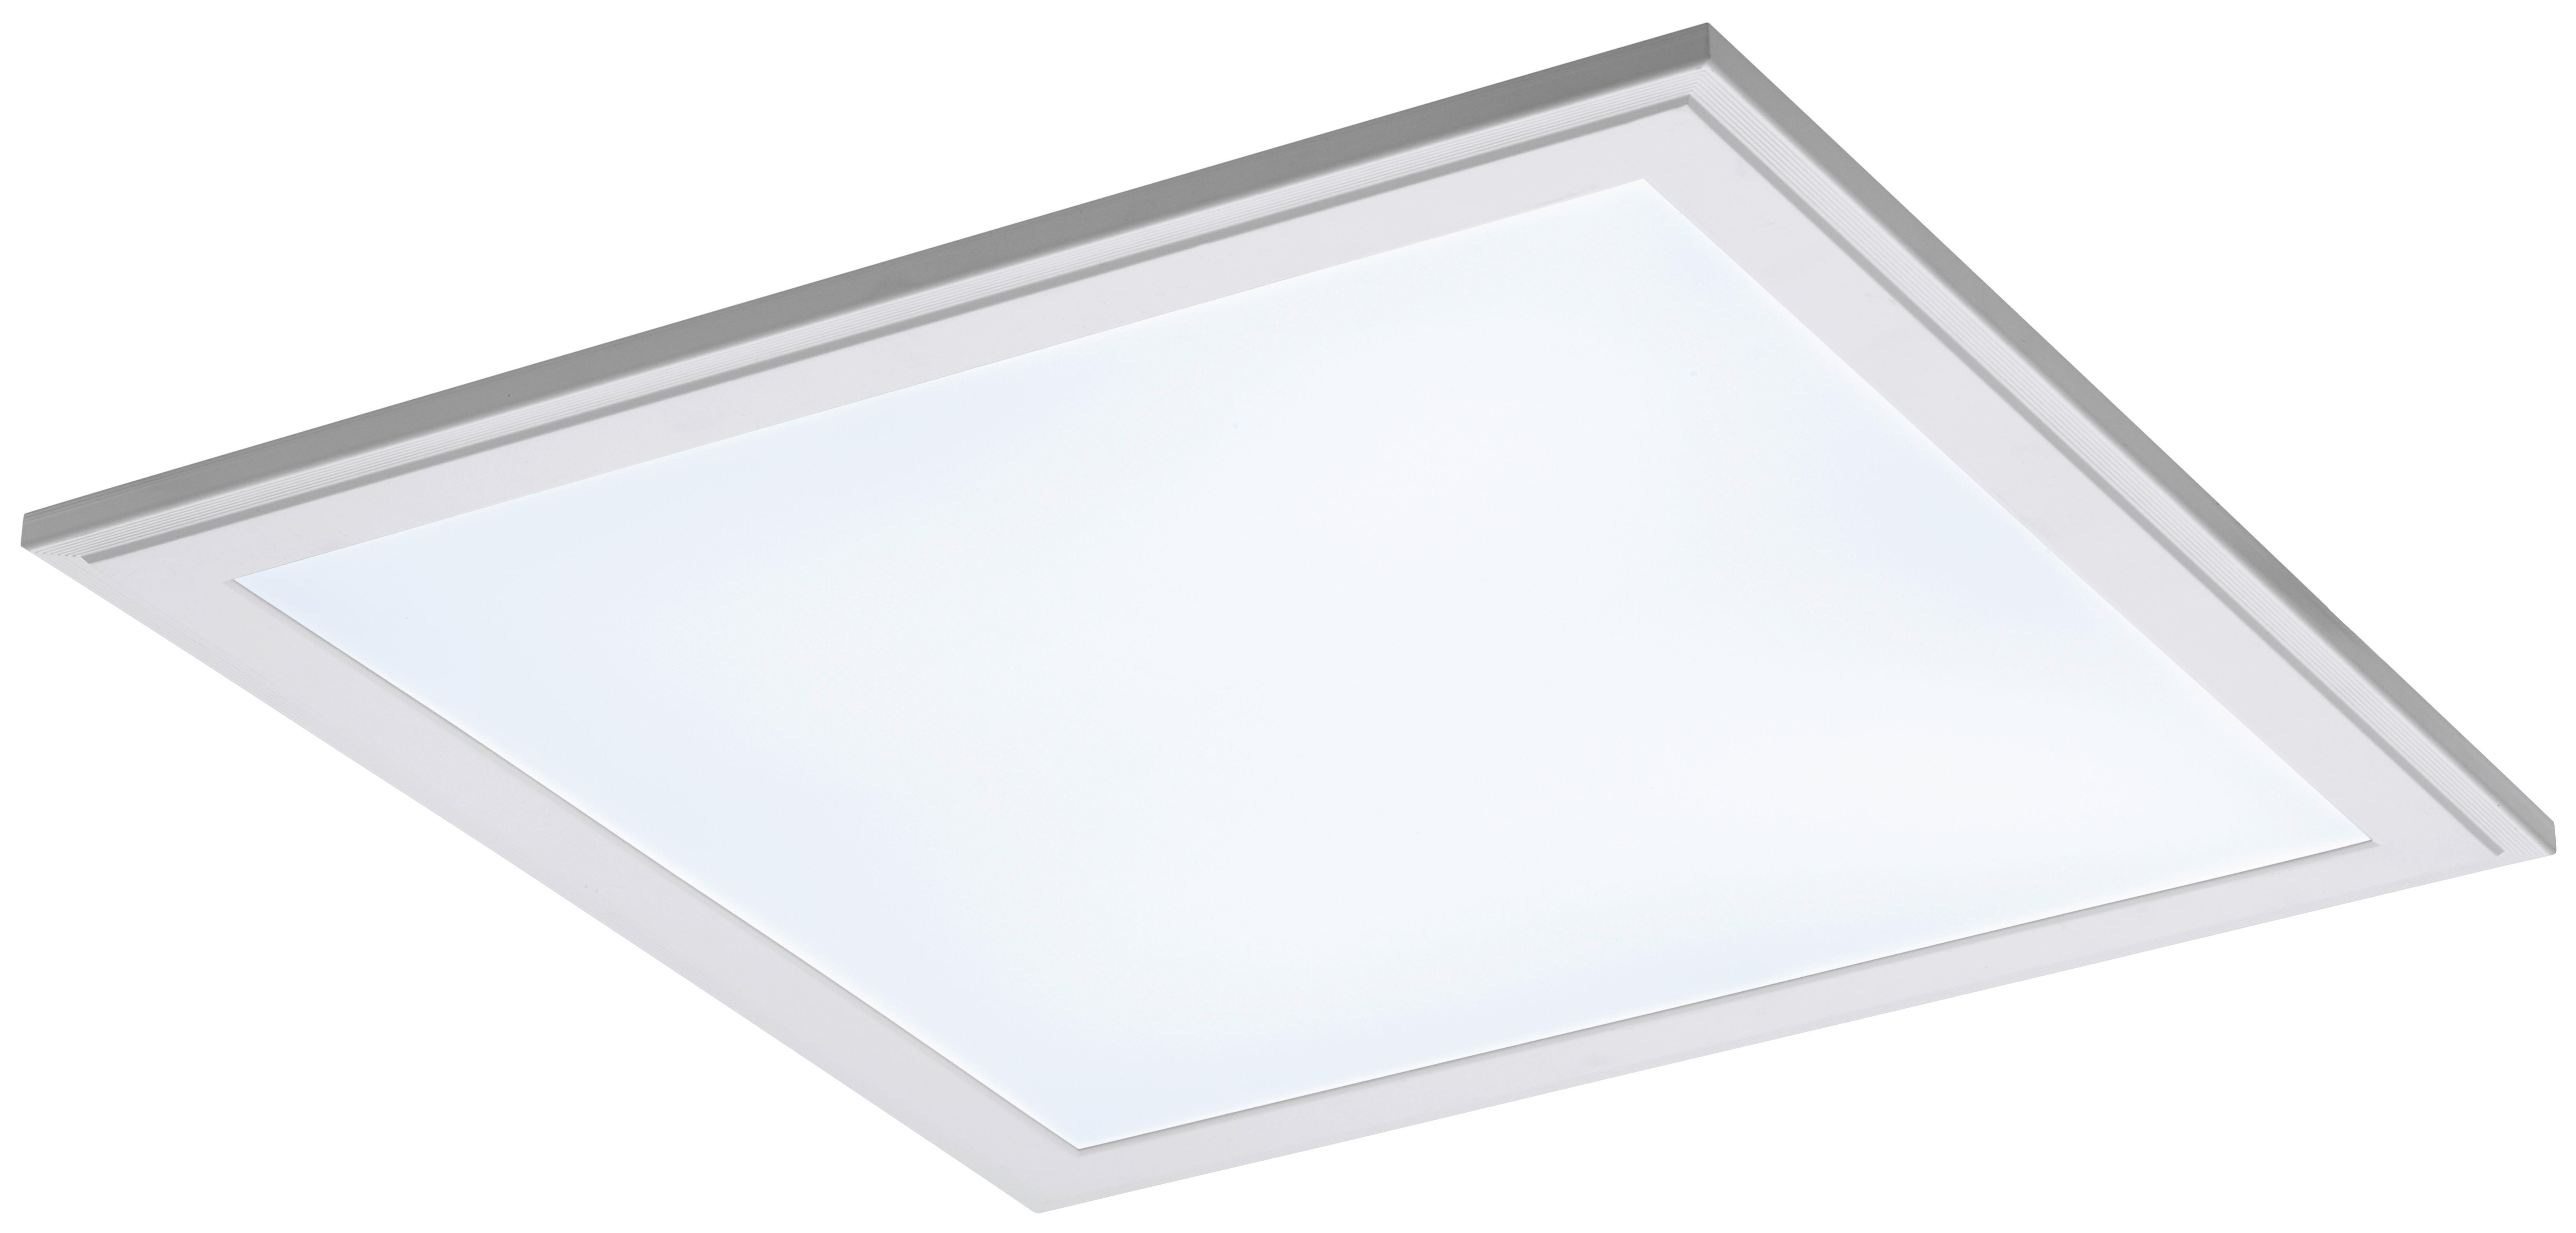 LED-DECKEN- UND EINBAULEUCHTE Connect  - Weiß, Design, Kunststoff/Metall (45/45/1,5cm)